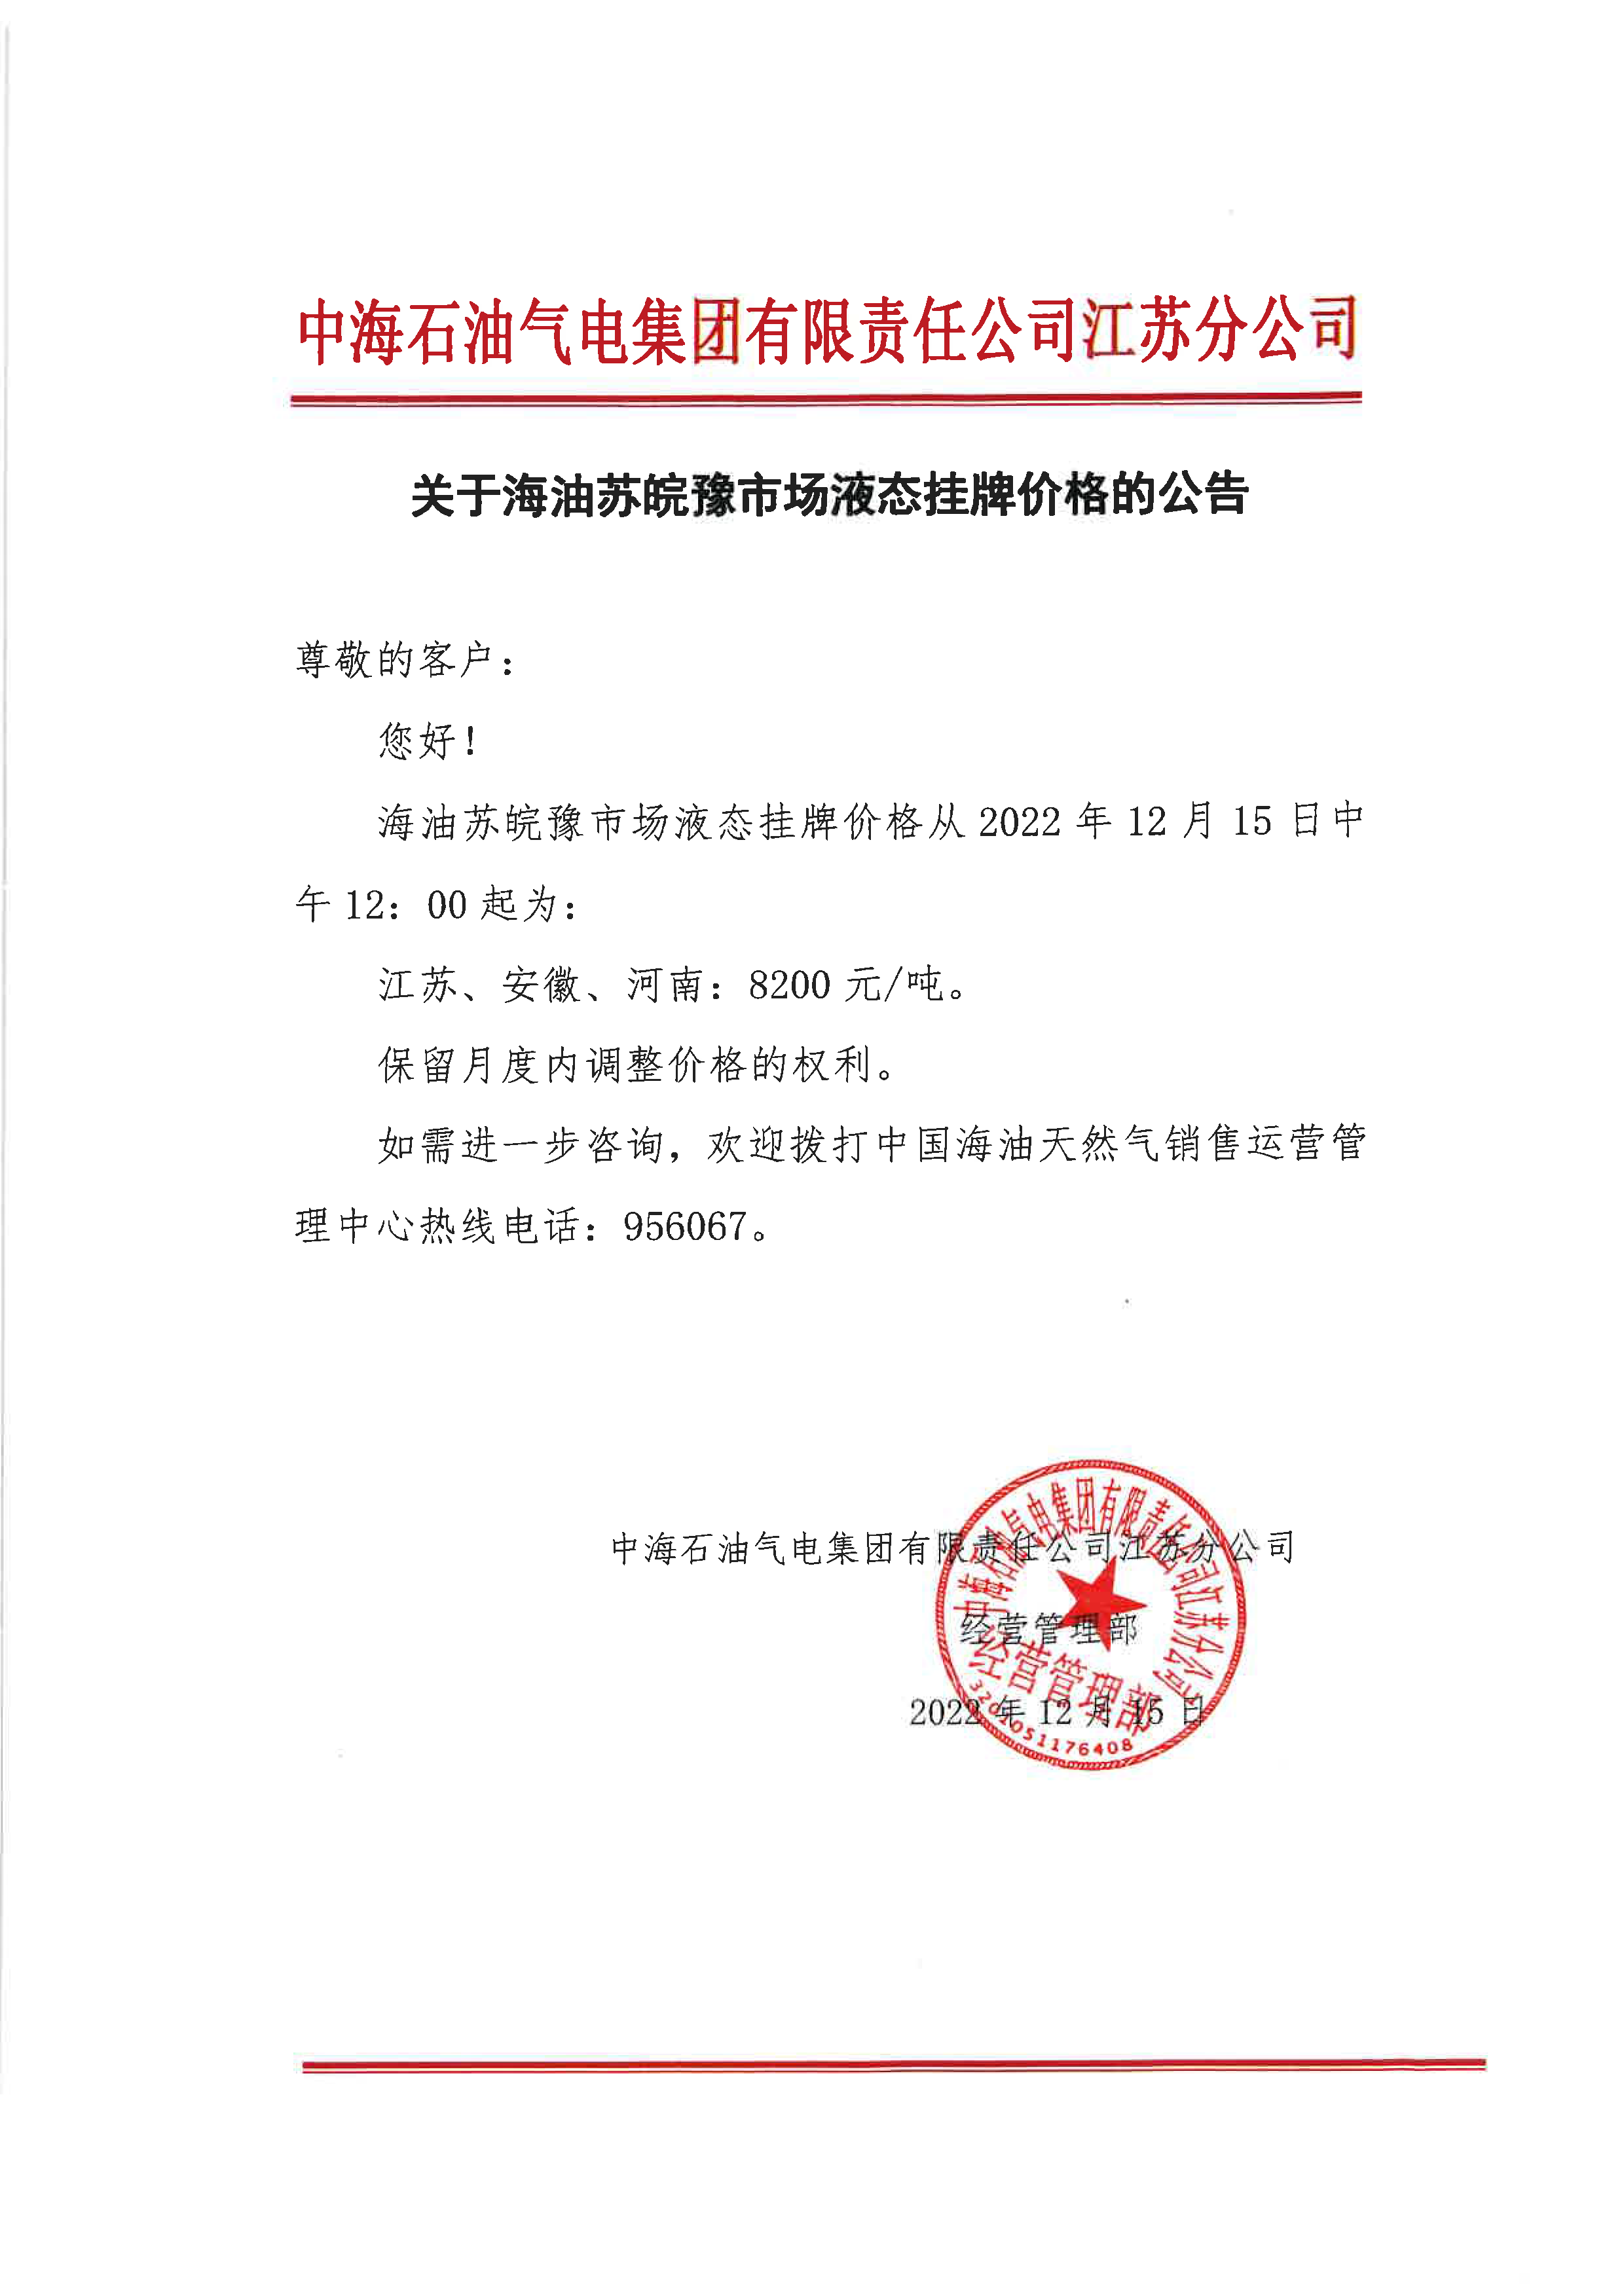 中海油江苏分公司关于12月15日华东苏皖市场价格调整公告-2.png